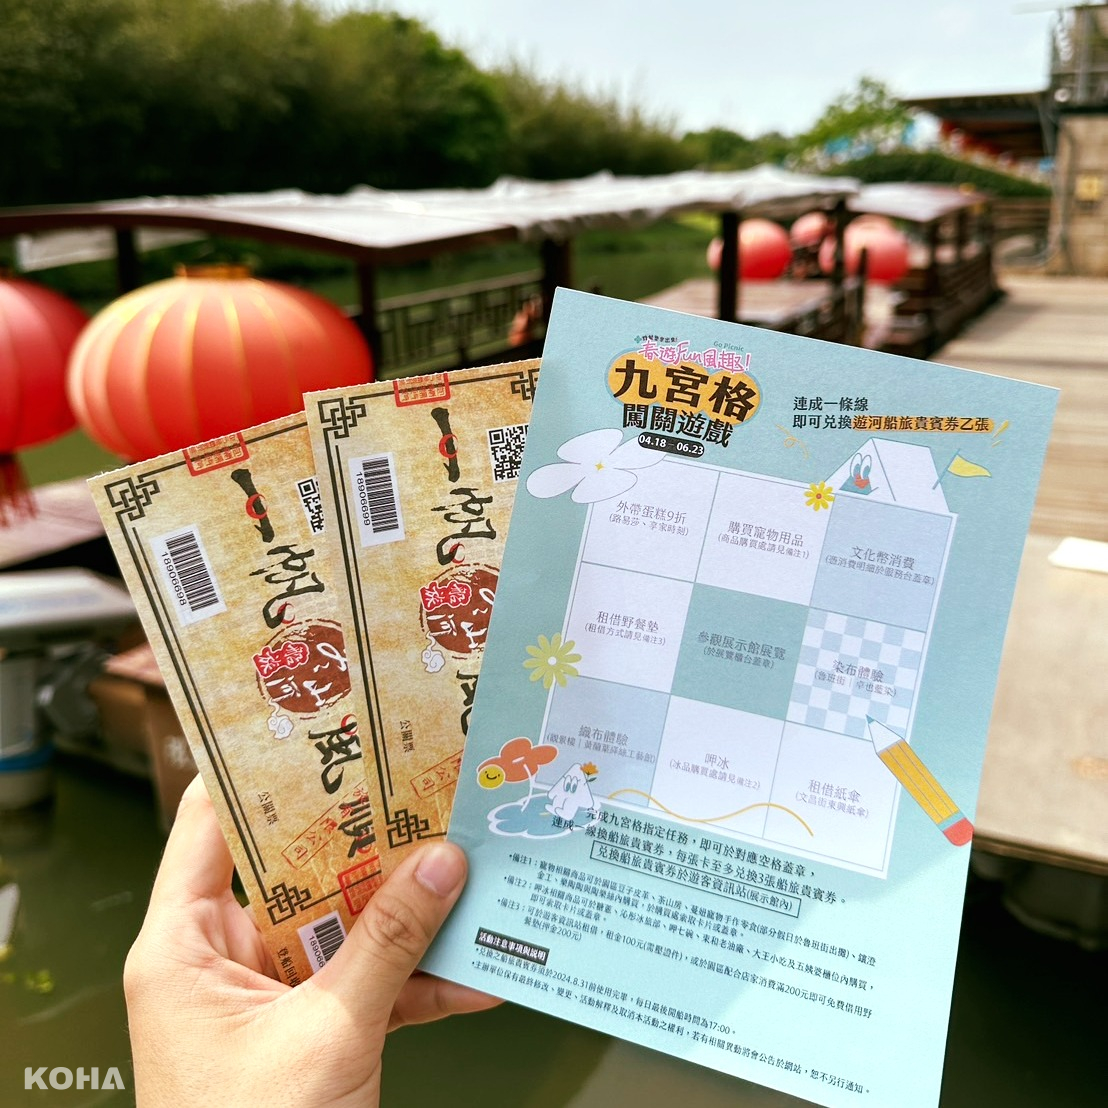 7.春遊fFUN風趣「九宮格遊戲」，憑卡完成賓果連線就能獲得免費遊船券。